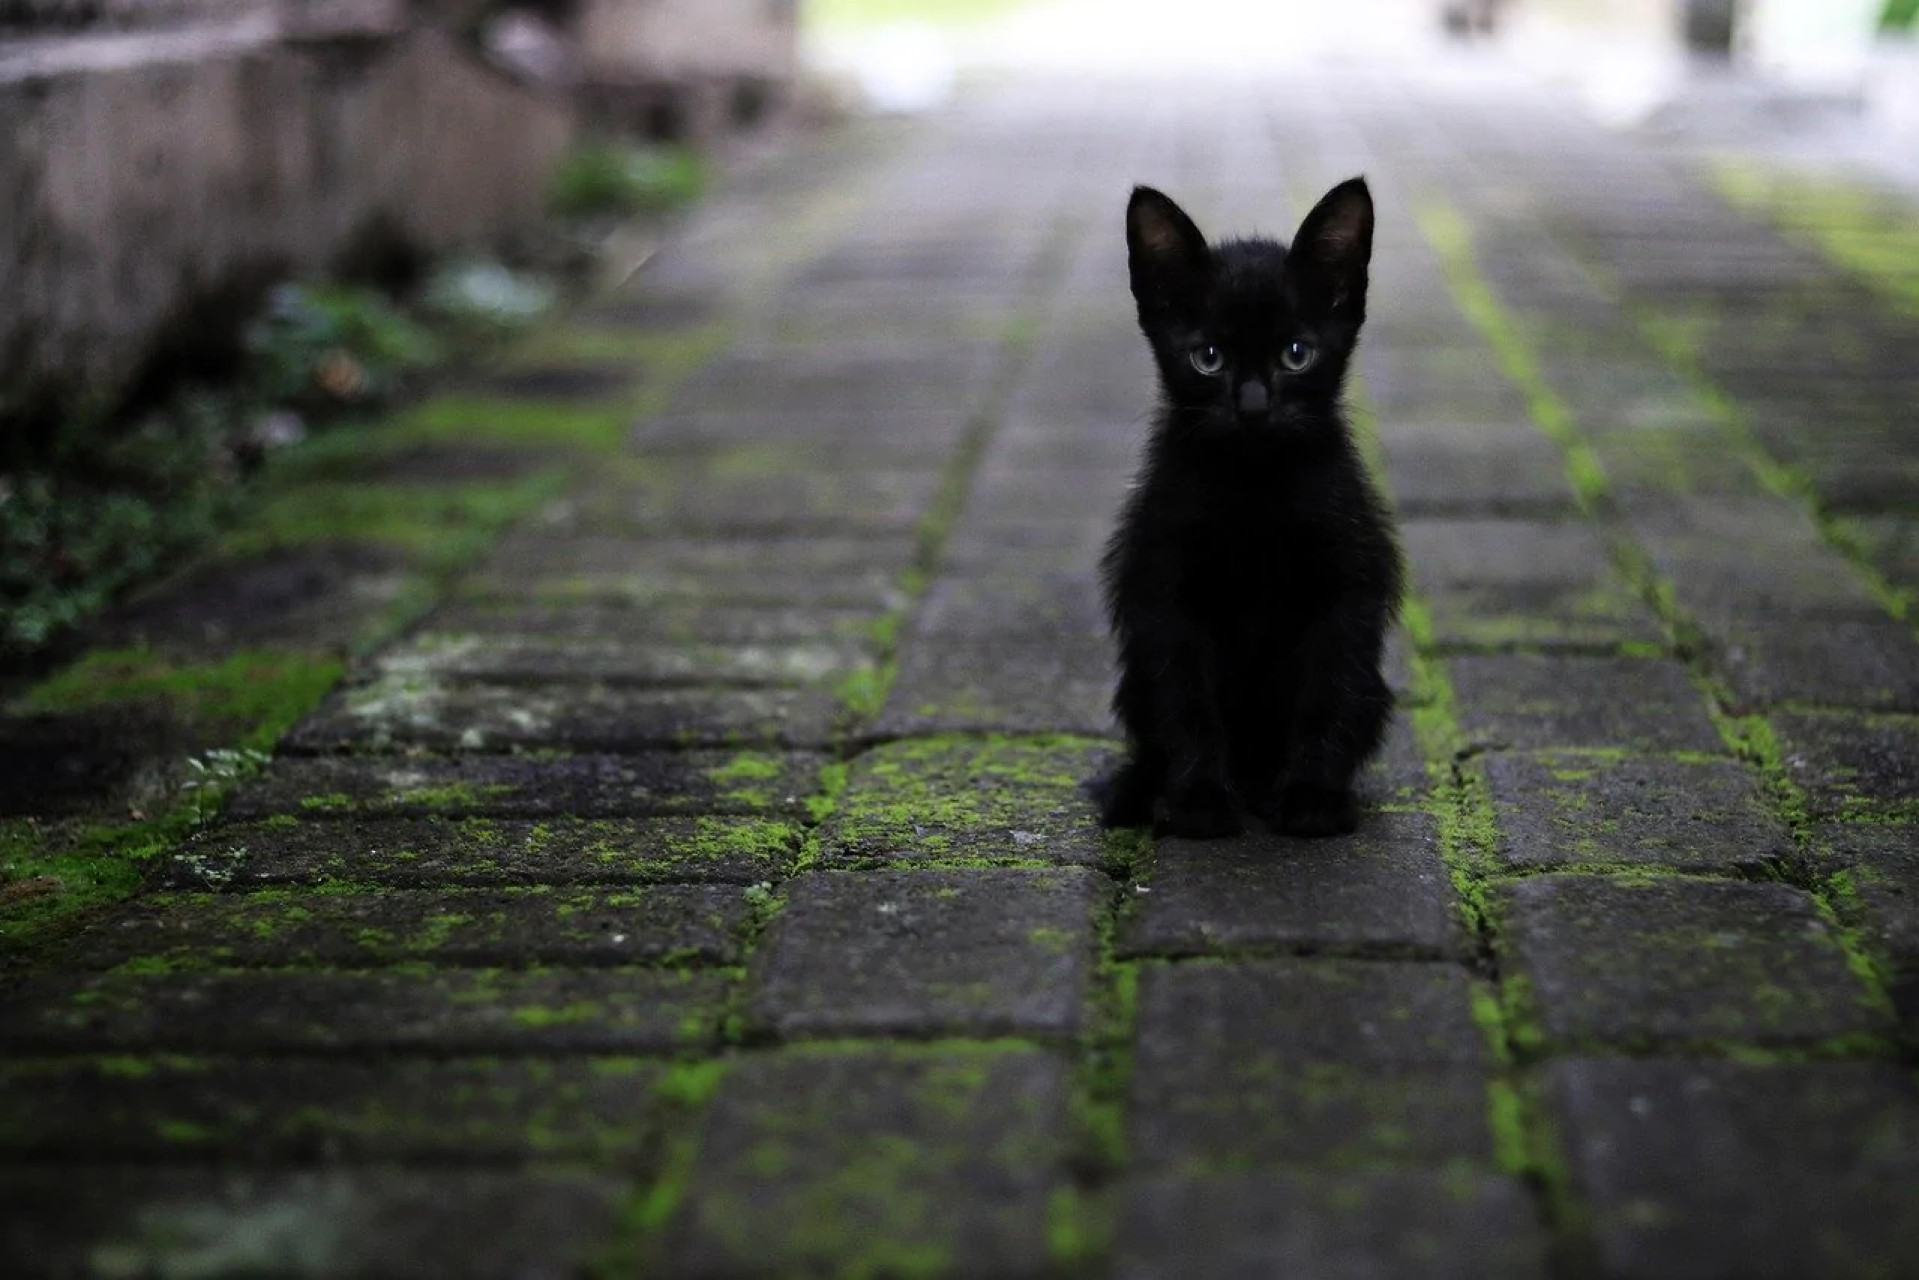 Le chat noir porte malheur selon les superstitions